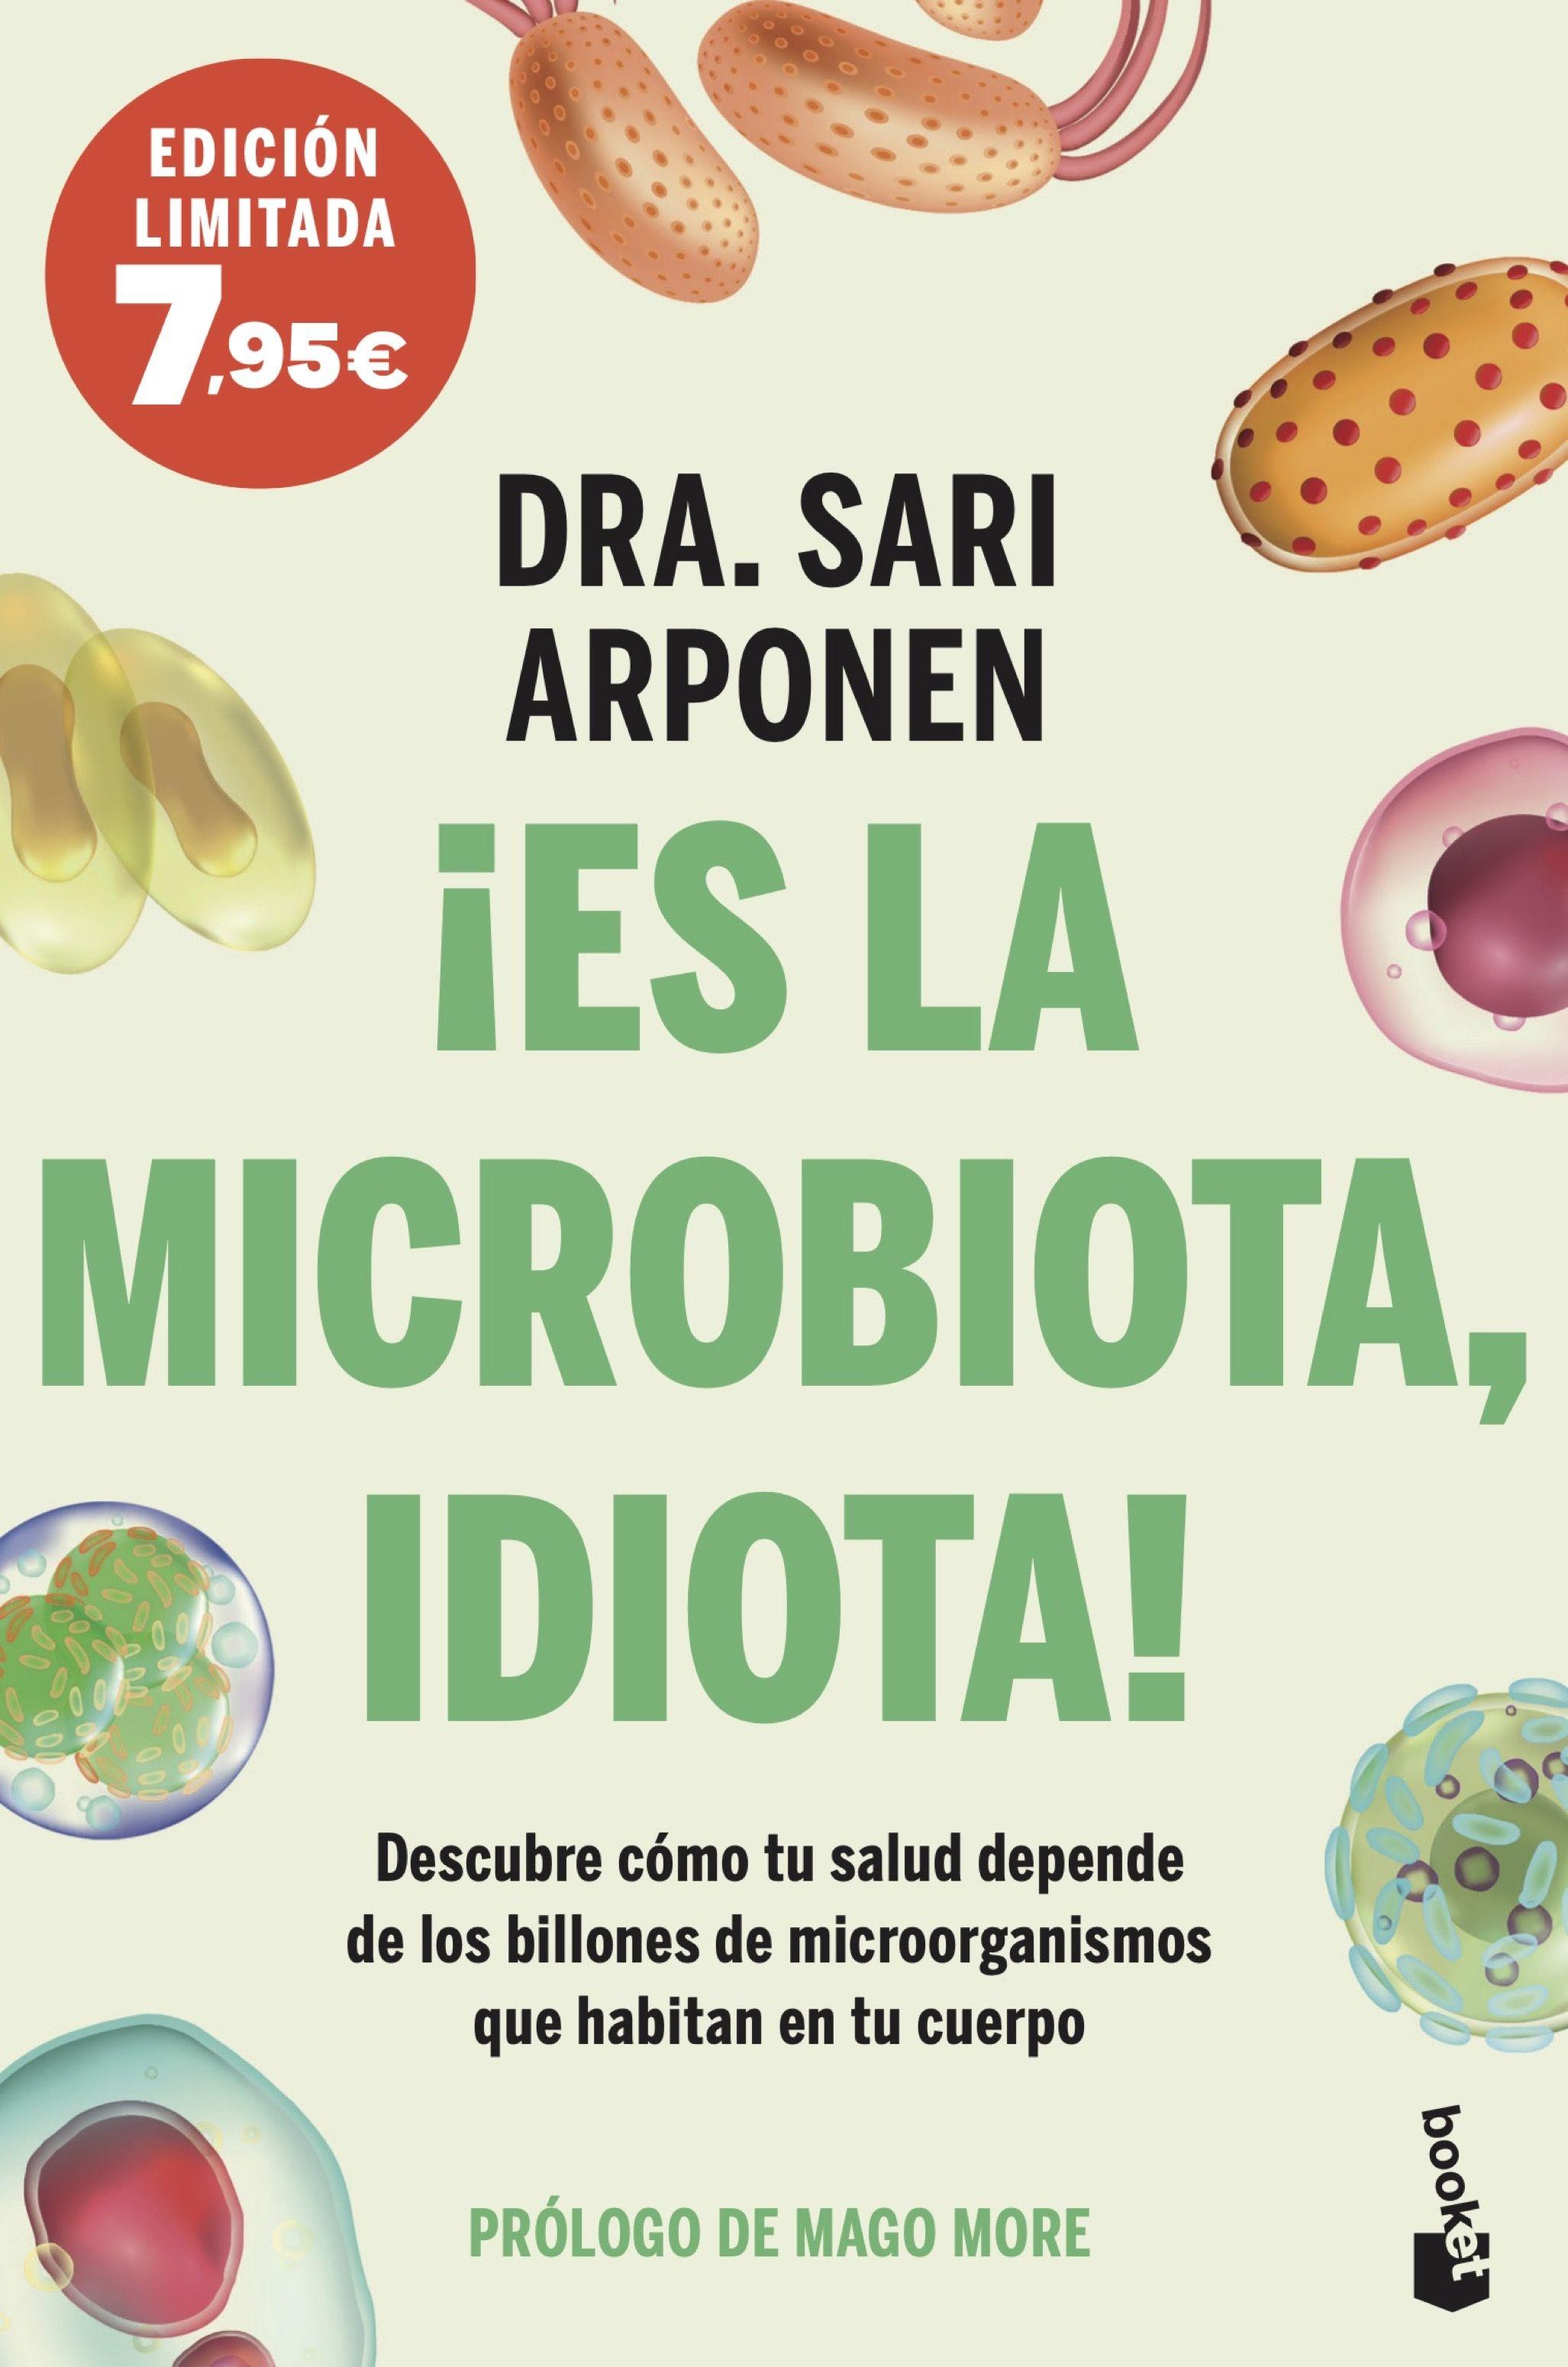 Es la microbiota, idiota! "Descubre cómo tu salud depende de los billones de microorganismos que ha"